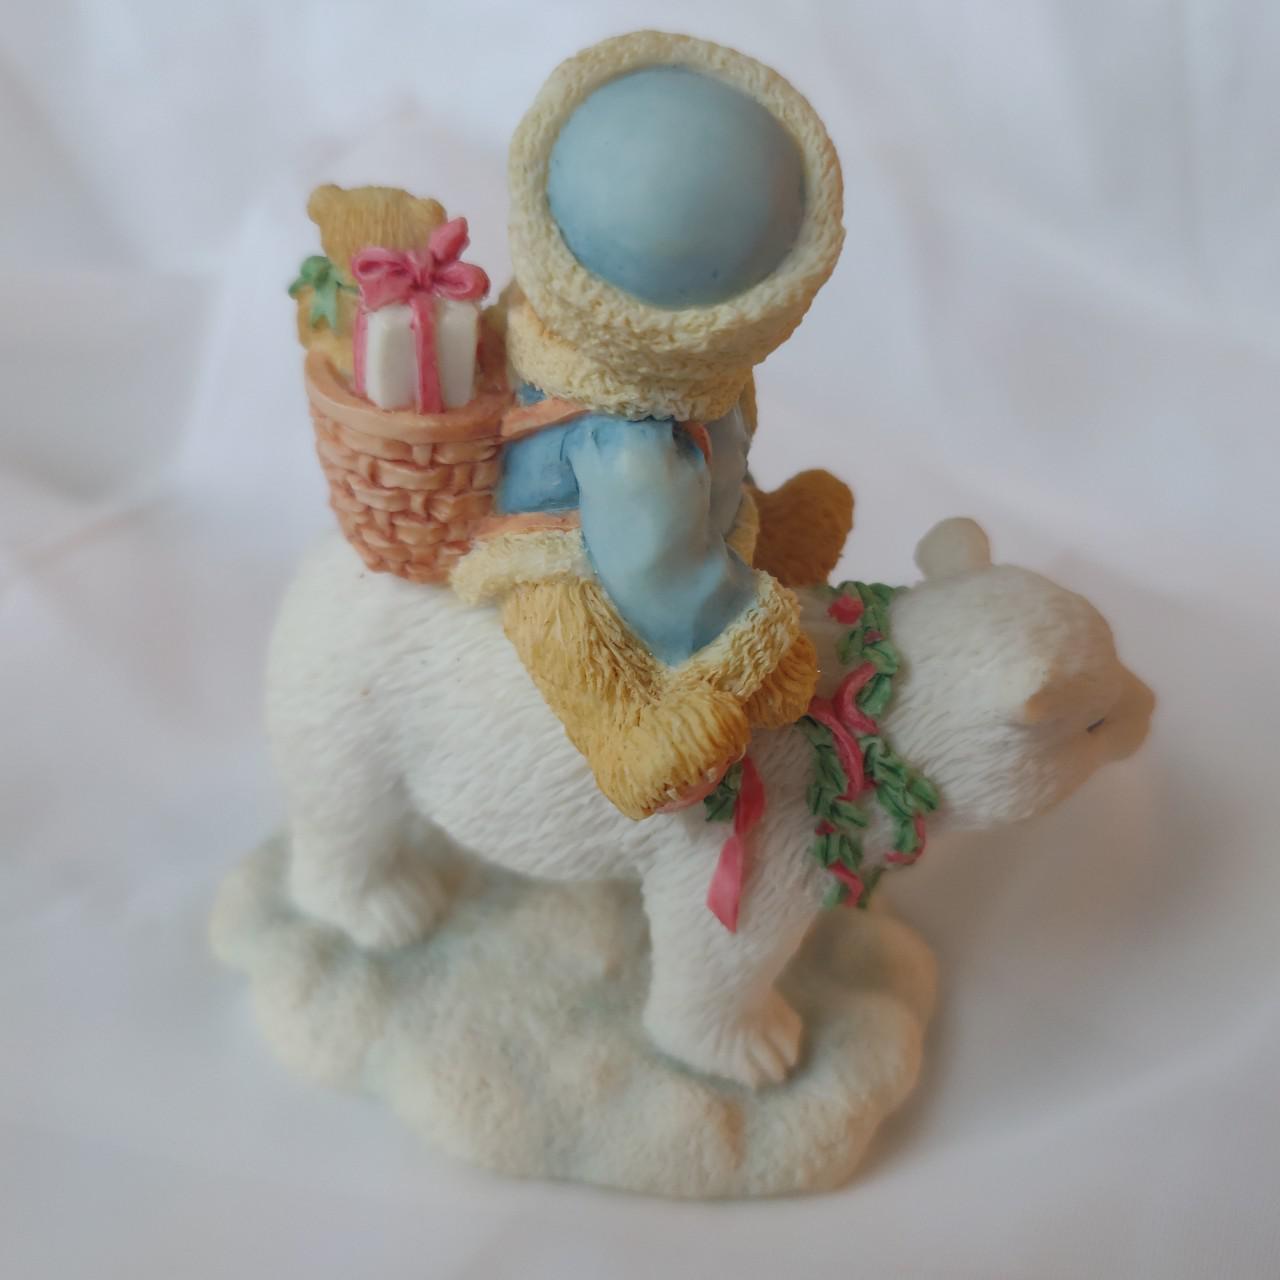 Product Image 2 - Vintage 1994 Cherished Teddies figurine: